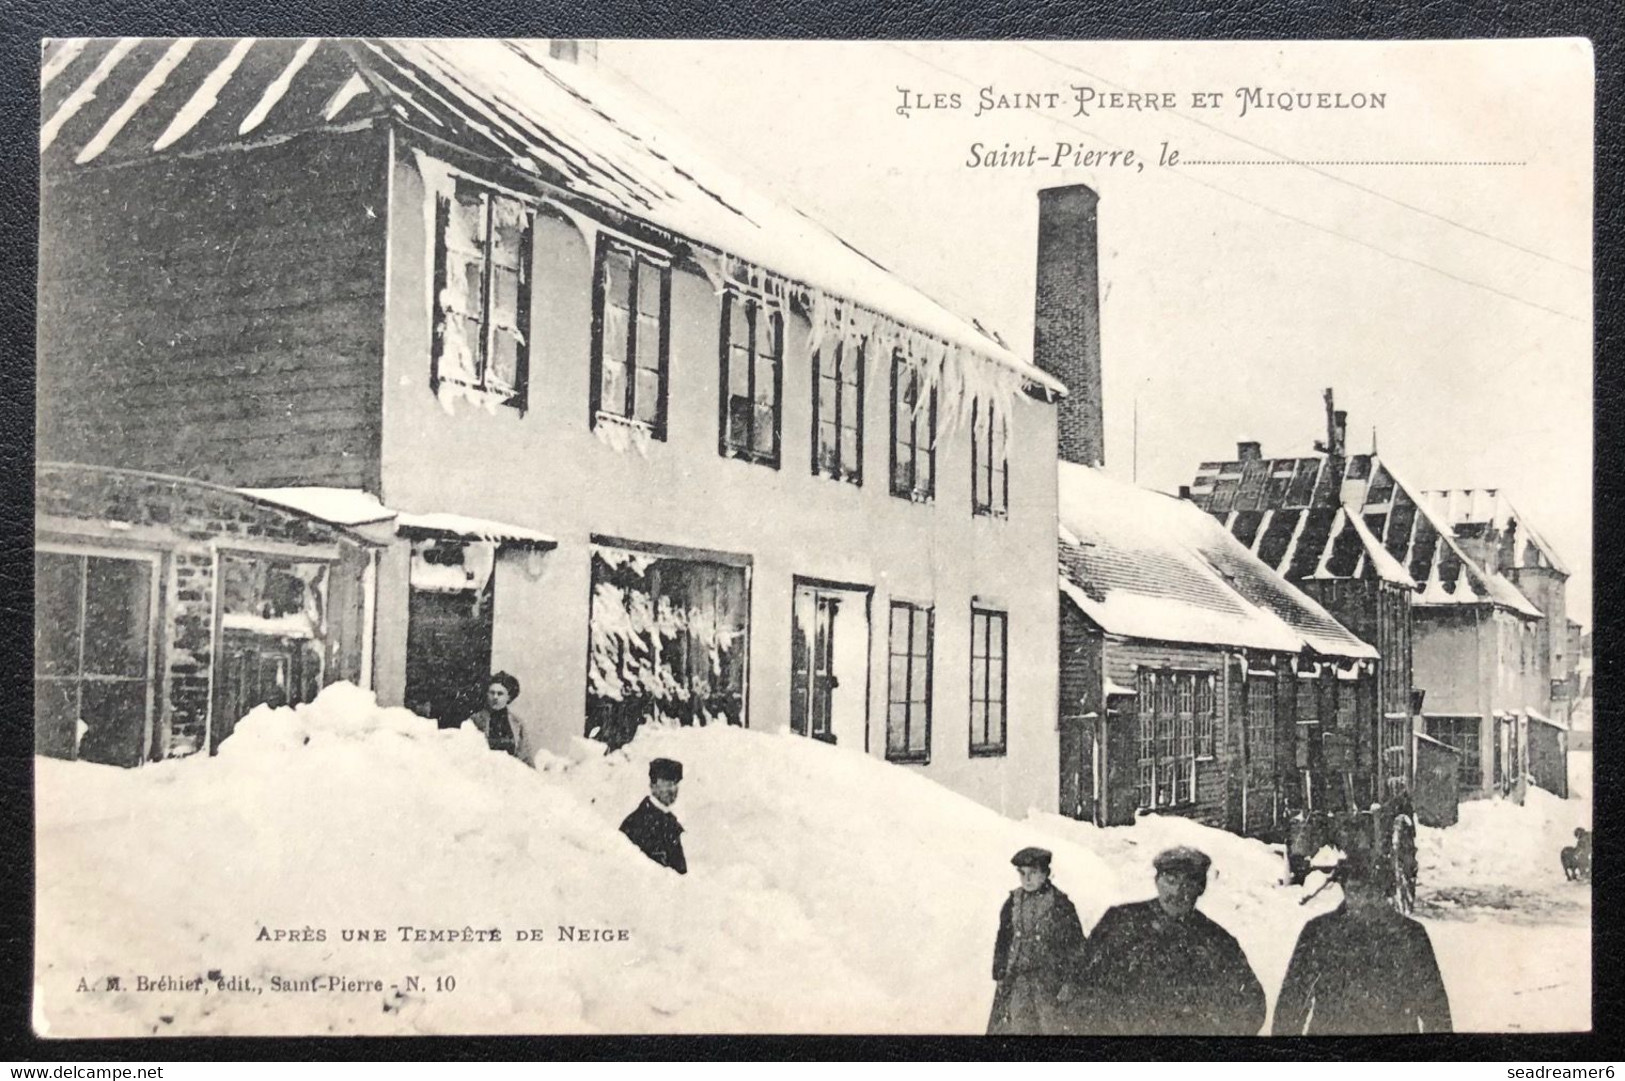 Carte Postale Originale De Saint-Pierre Et Miquelon 1900/1920 "Après Une Tempete De Neige" TTB - Saint-Pierre-et-Miquelon